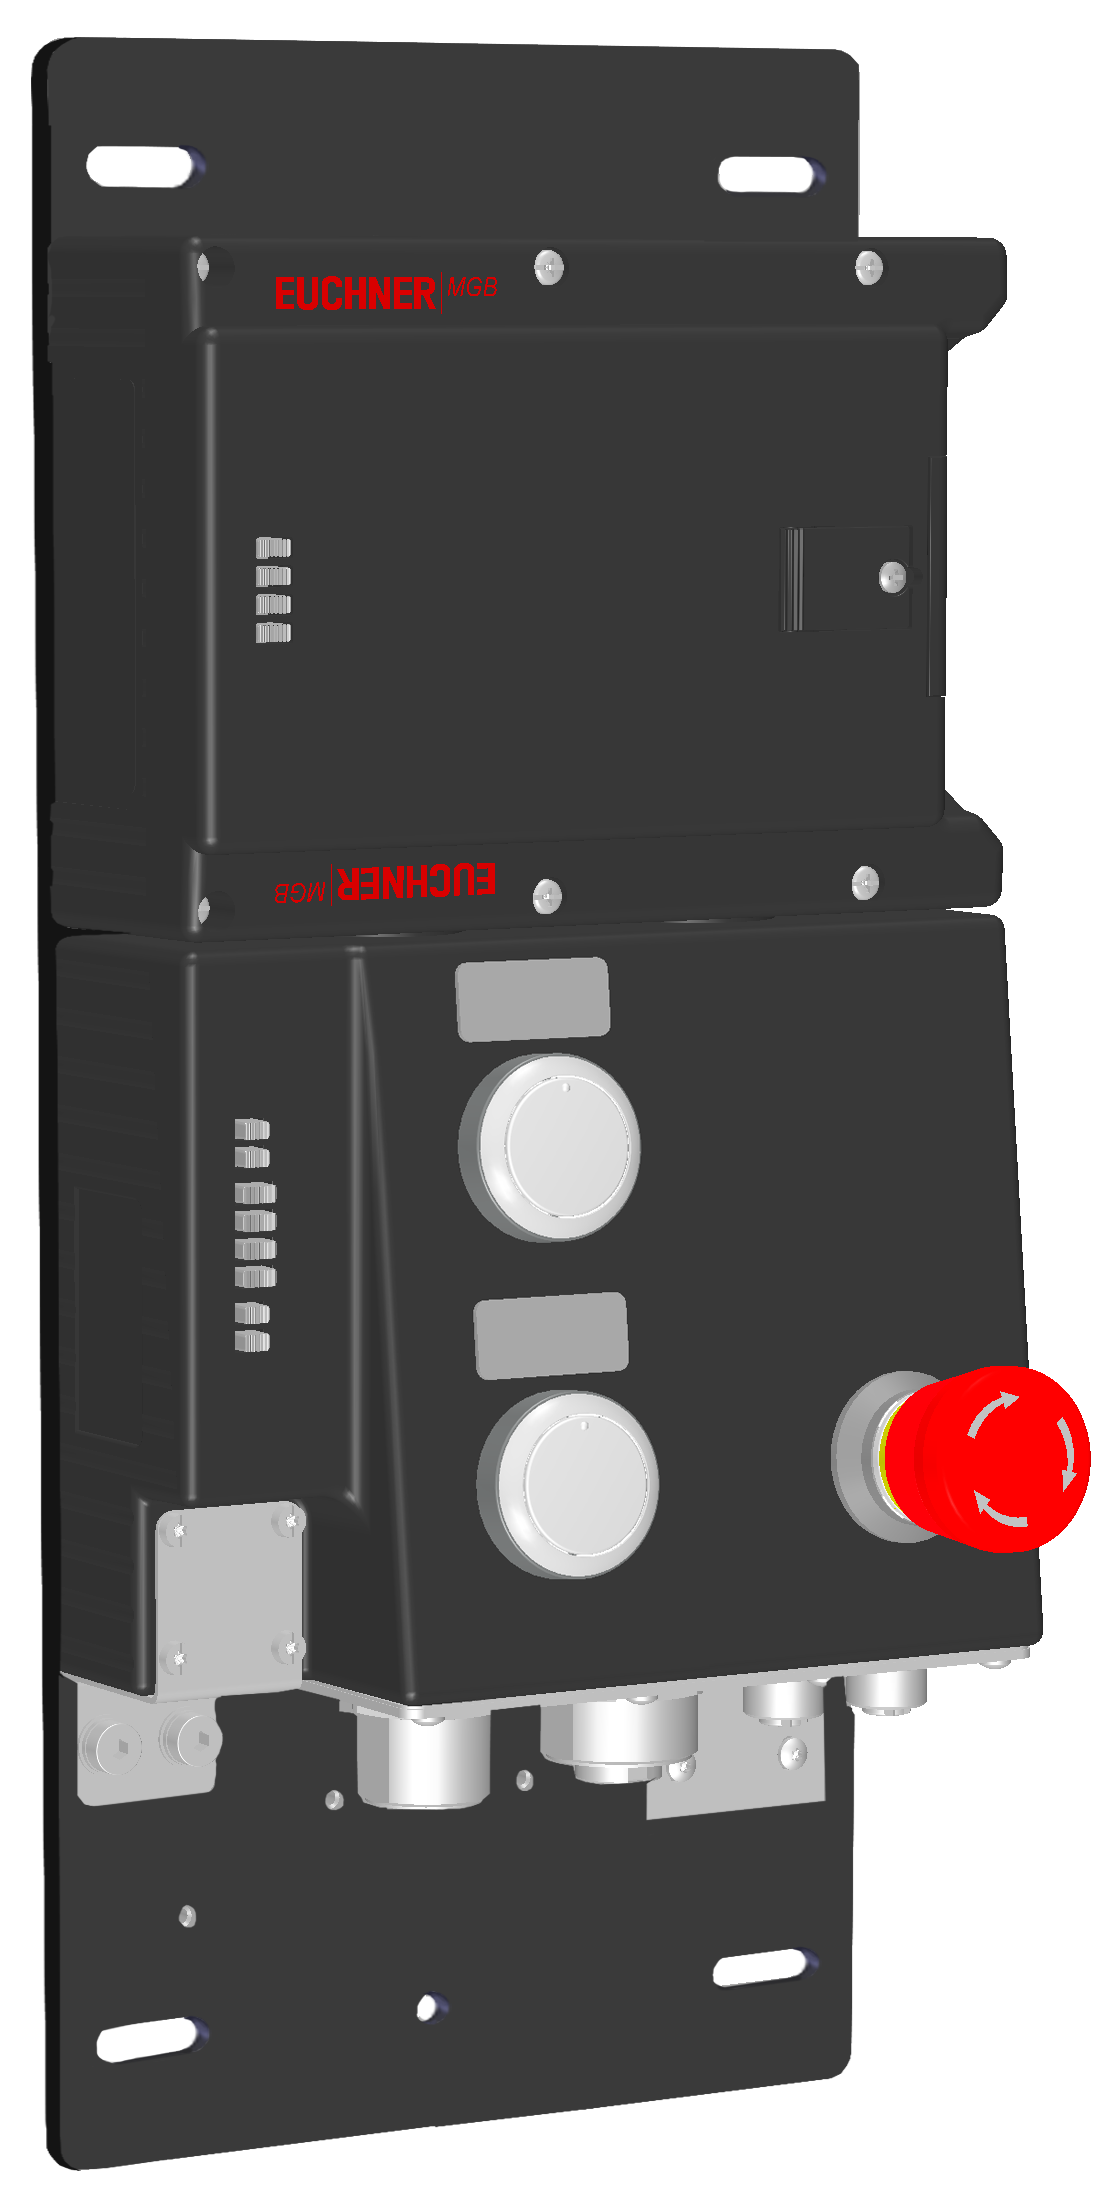 Locking modules MGB-L2B-PNA-R-121859  (Order no. 121859)